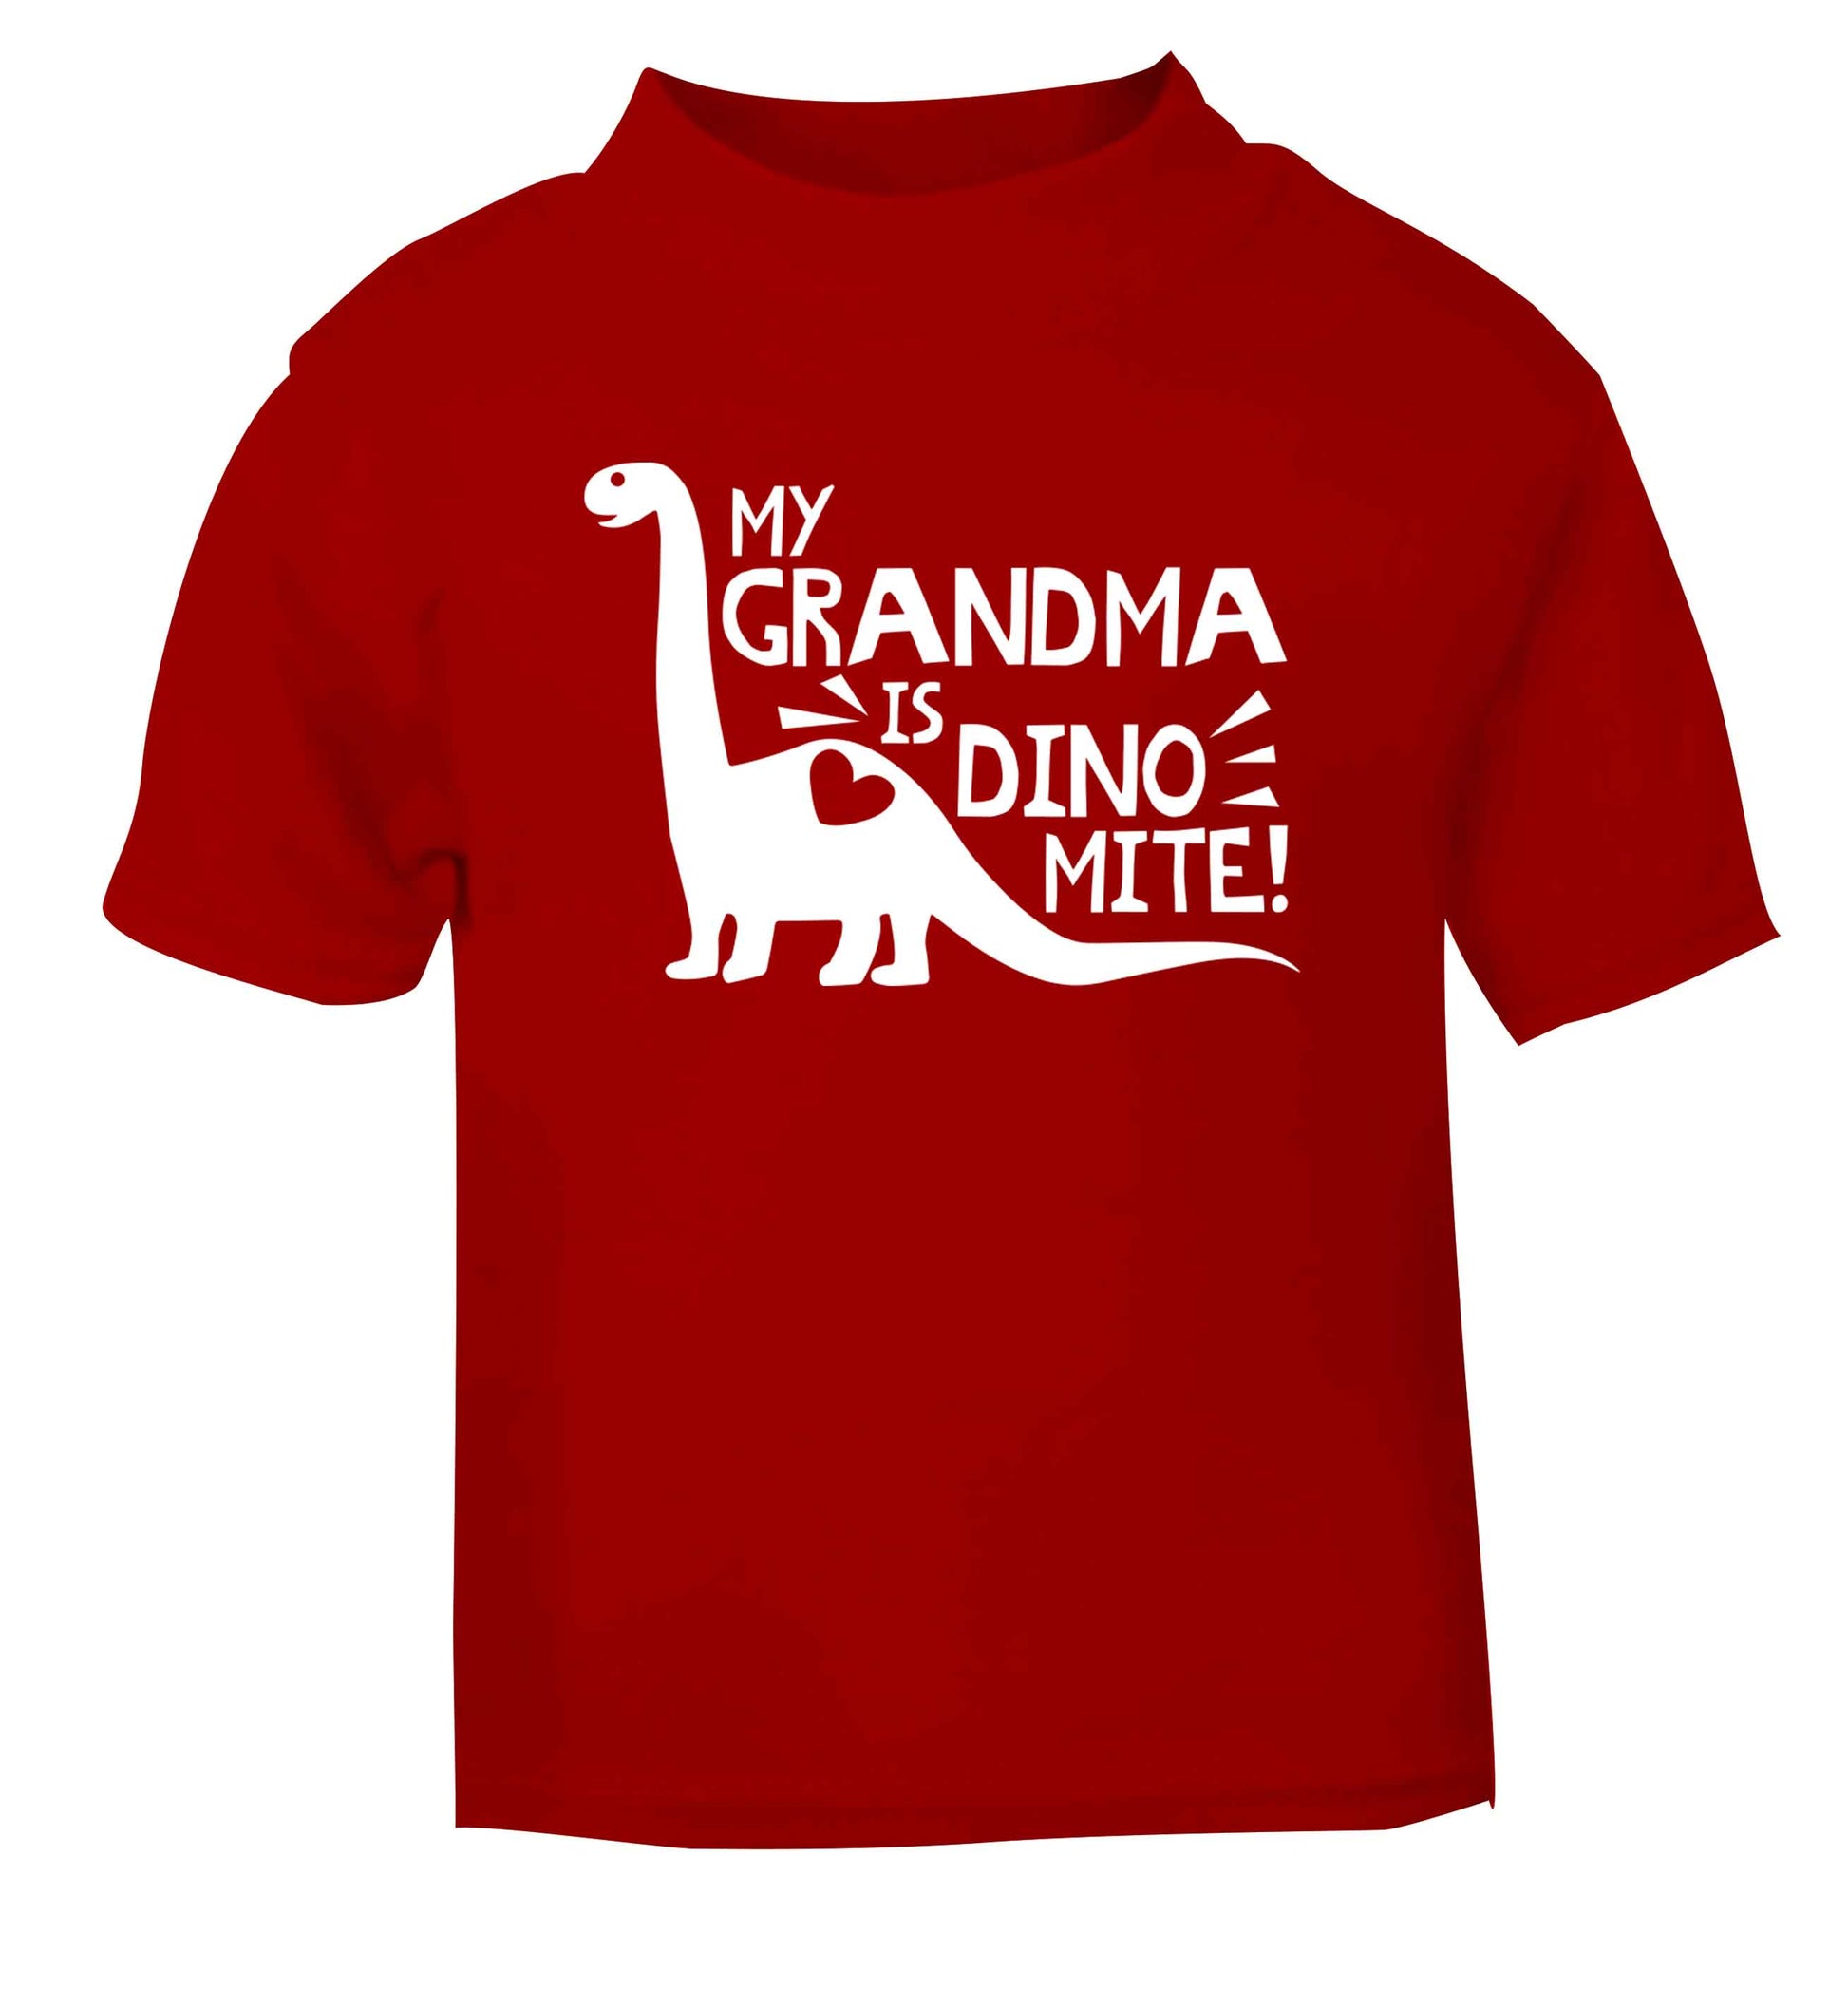 My grandma is dinomite! red Baby Toddler Tshirt 2 Years